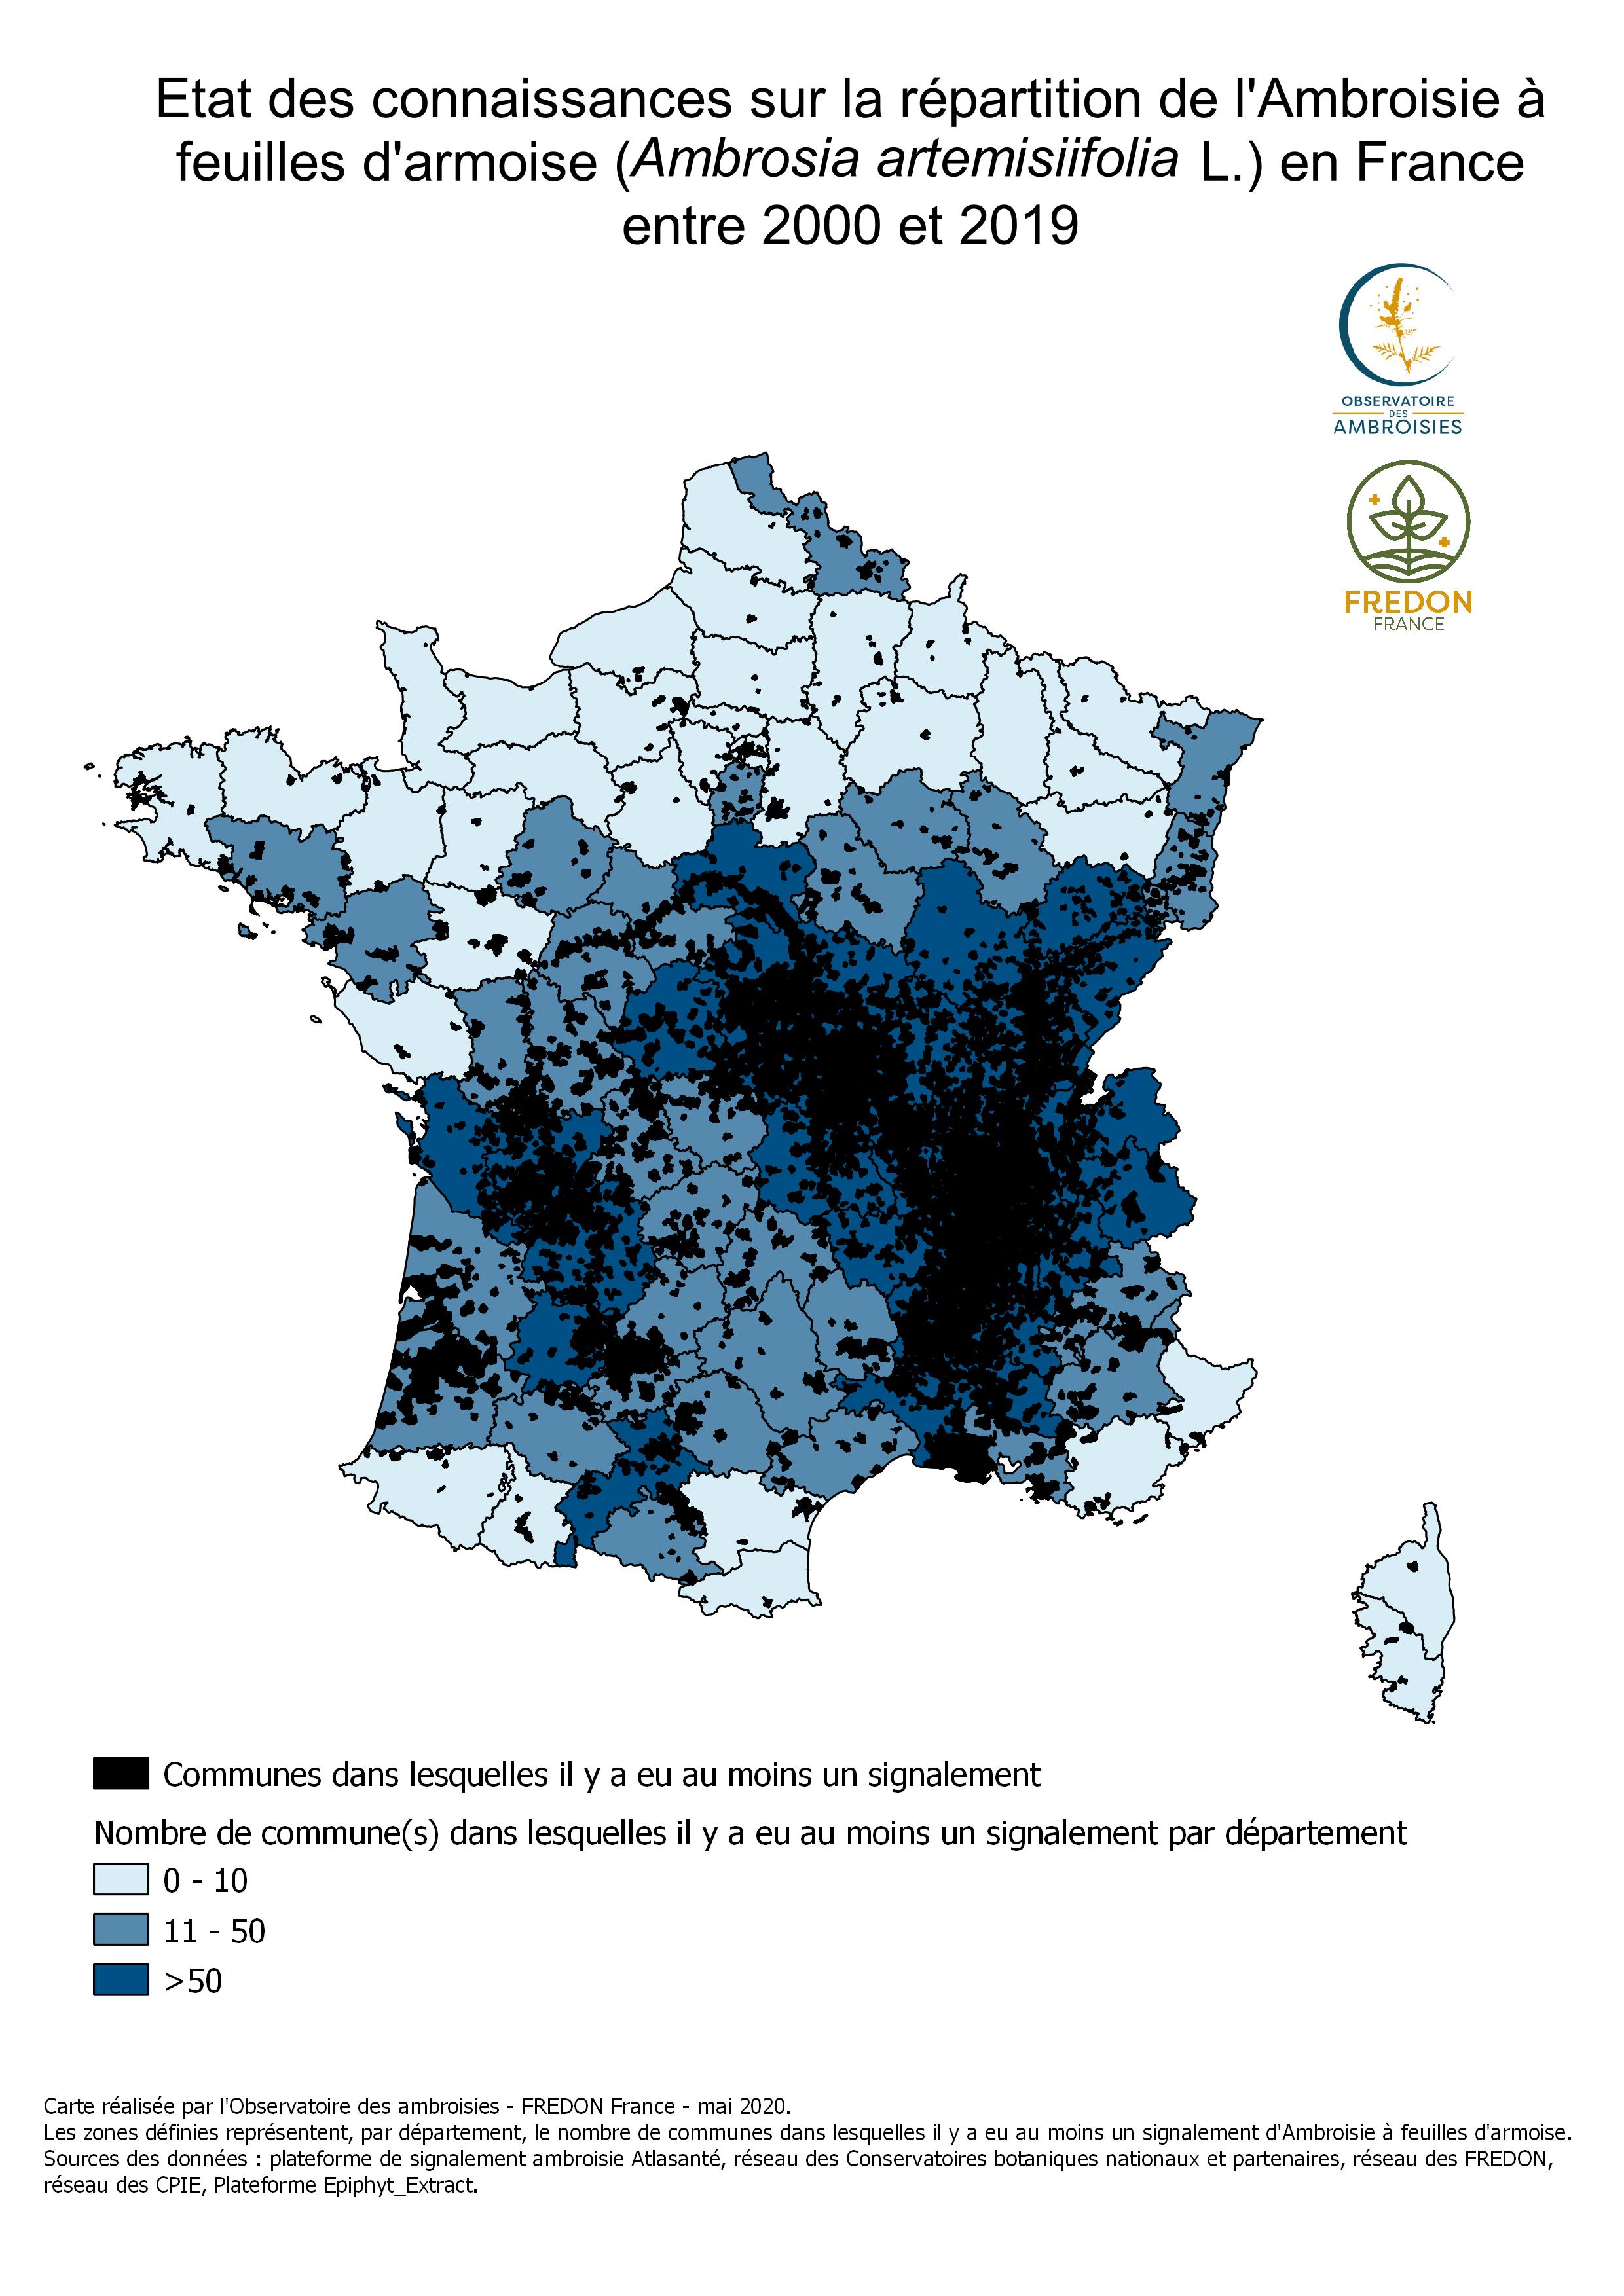 Cartographies de présence de l'ambroisie en France - Ministère des Solidarités et de la Santé